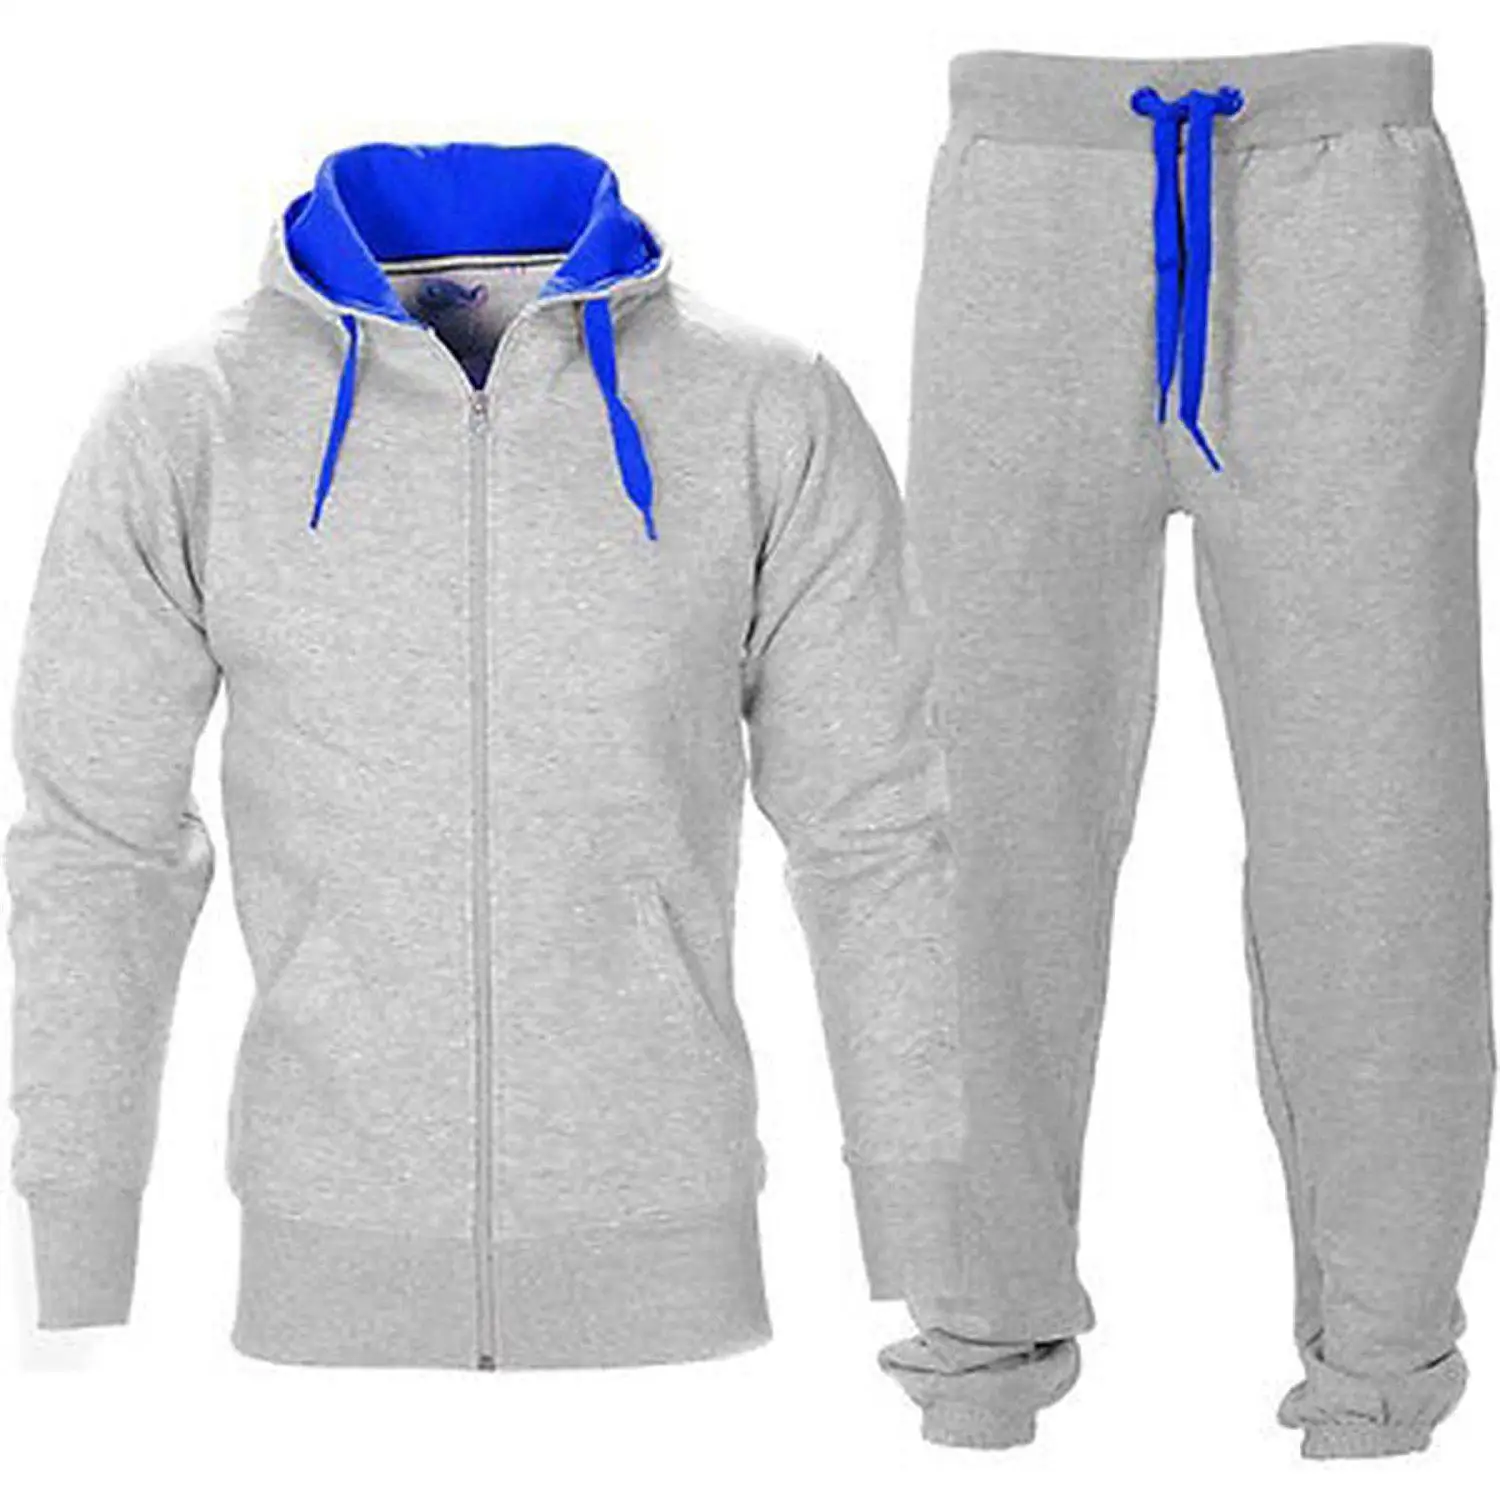 Мужские спортивные костюмы с капюшоном на осень и зиму спортивные костюмы для бега куртки топы и штаны комплект из 2 предметов Толстовка Спортивная одежда для бега комплекты - Цвет: Grey blue